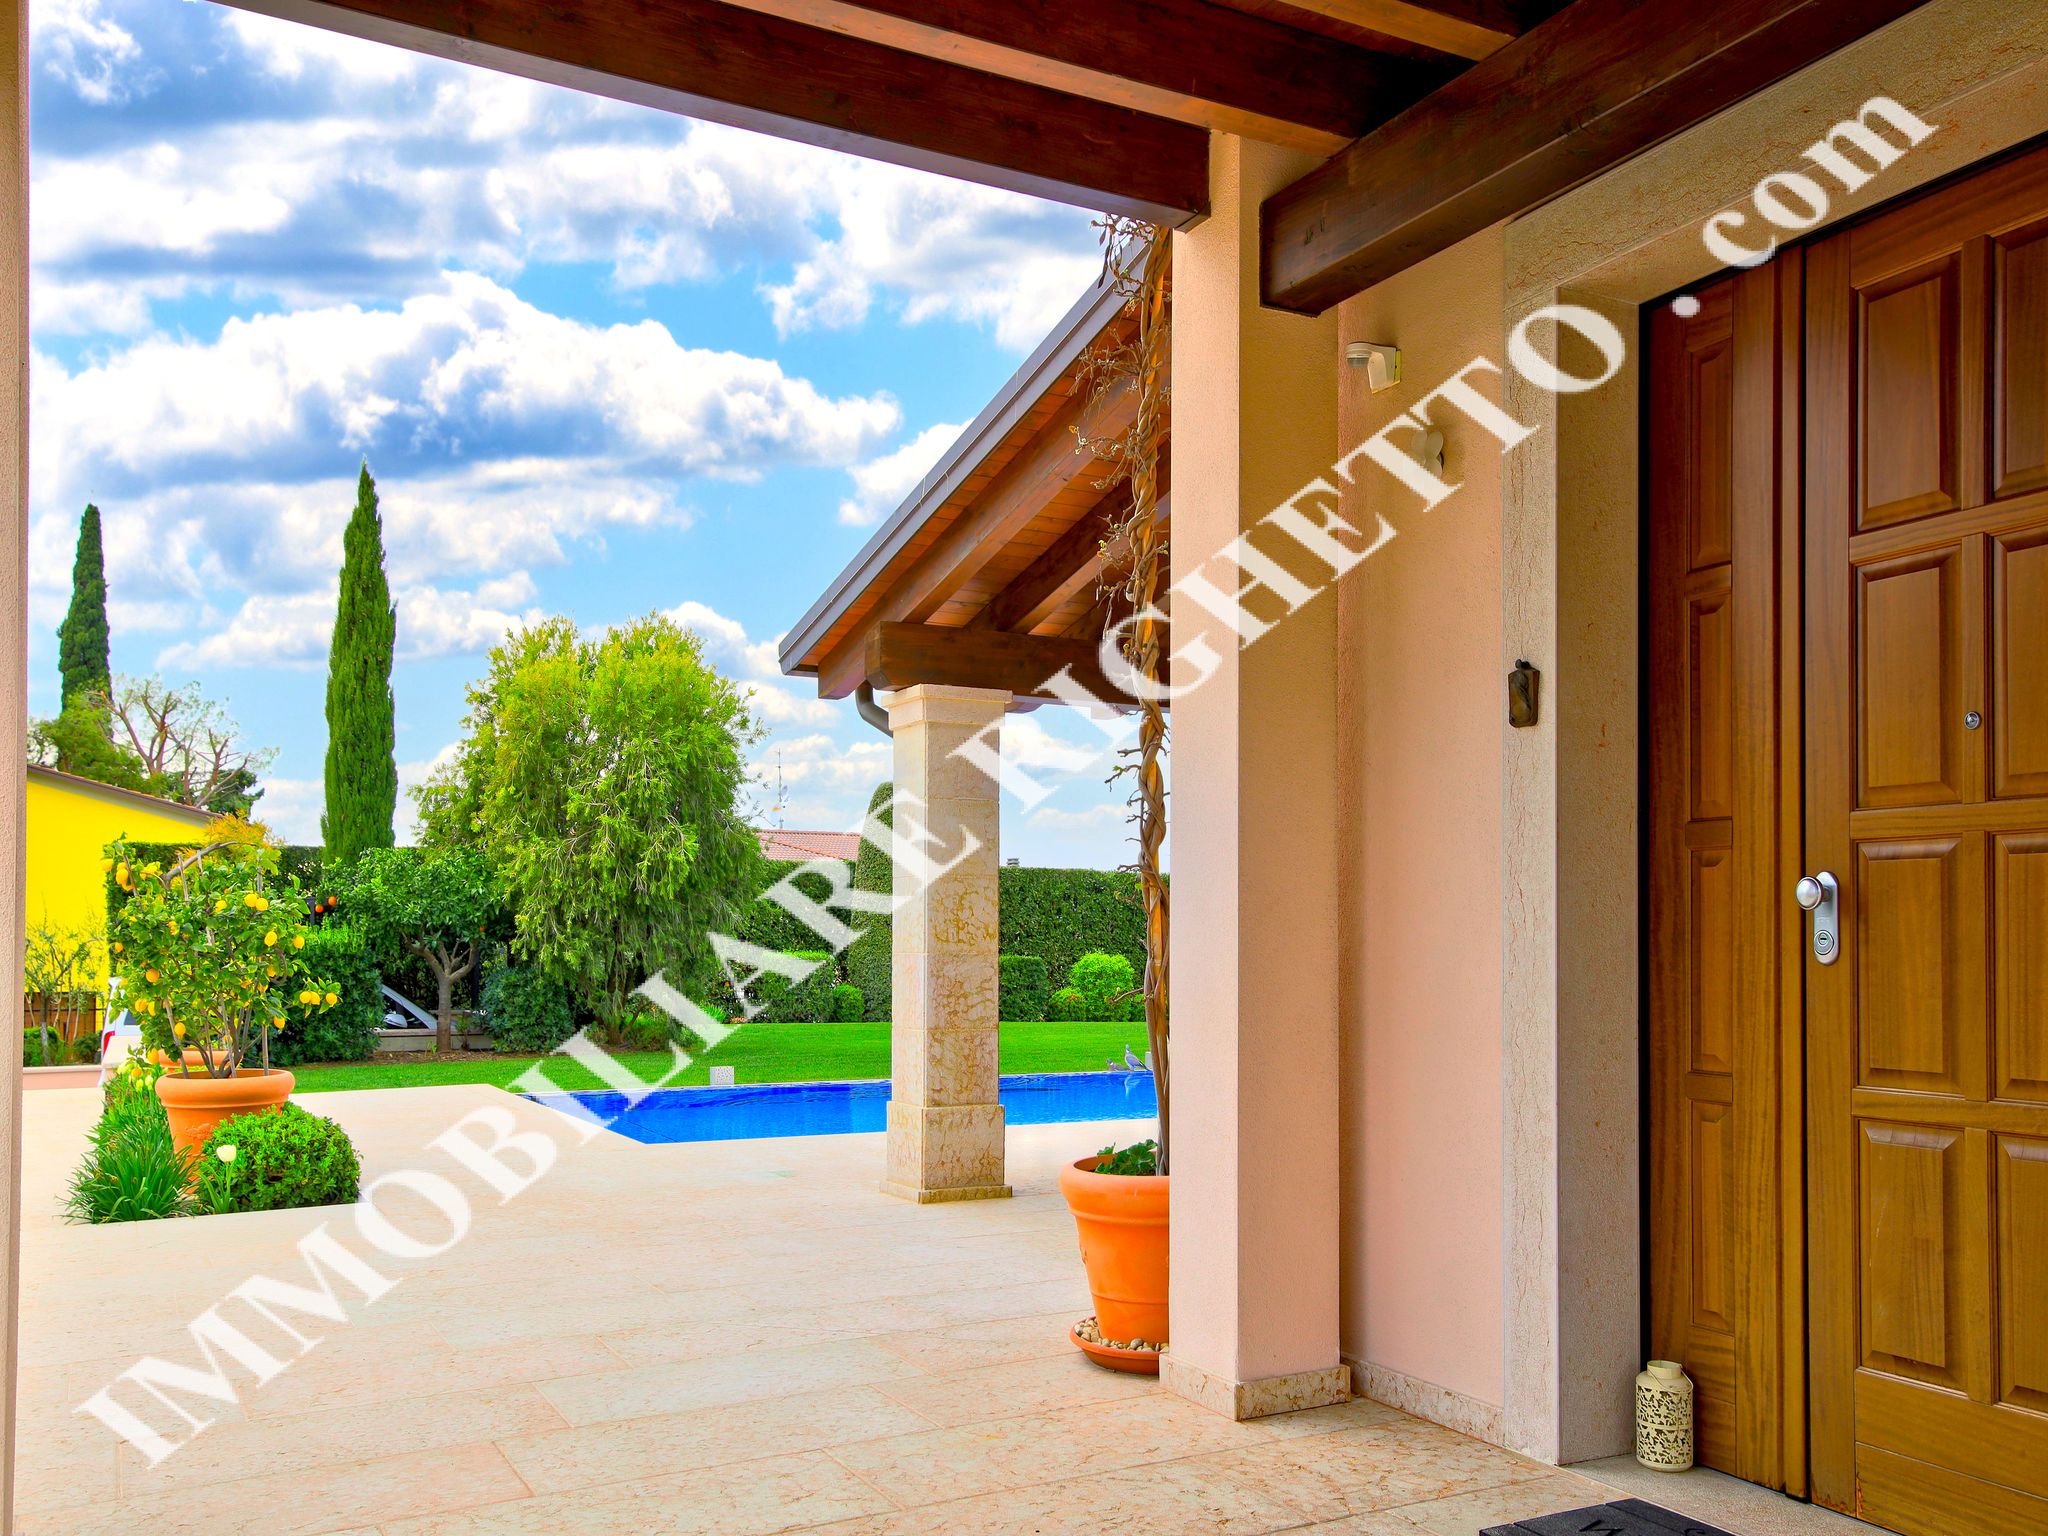 offerta immobile in vendita Villa di Lusso a due passi dal Lago.